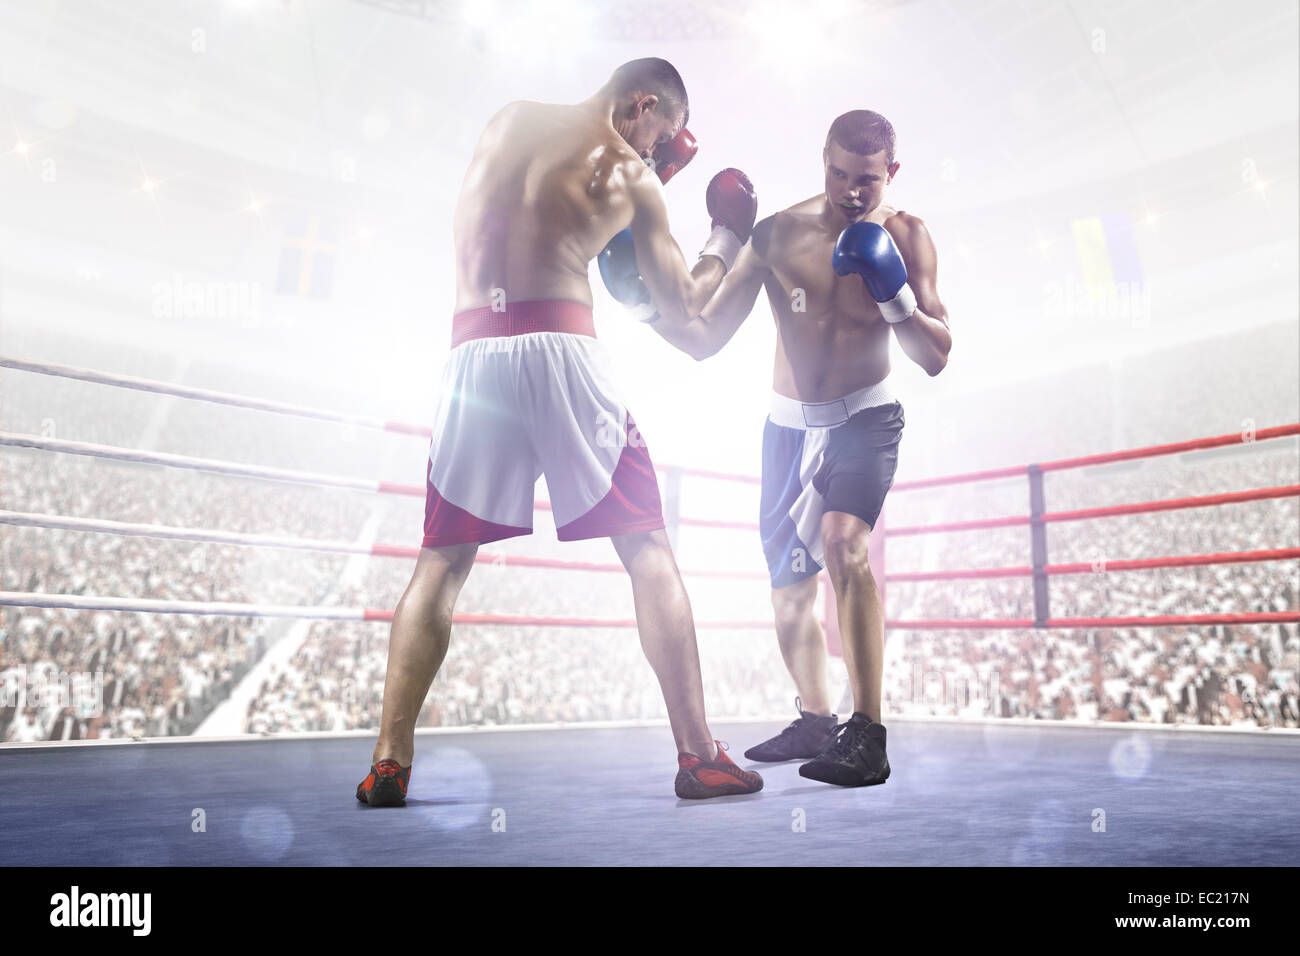 Los dos boxeadores professionl están luchando en la arena Foto de stock